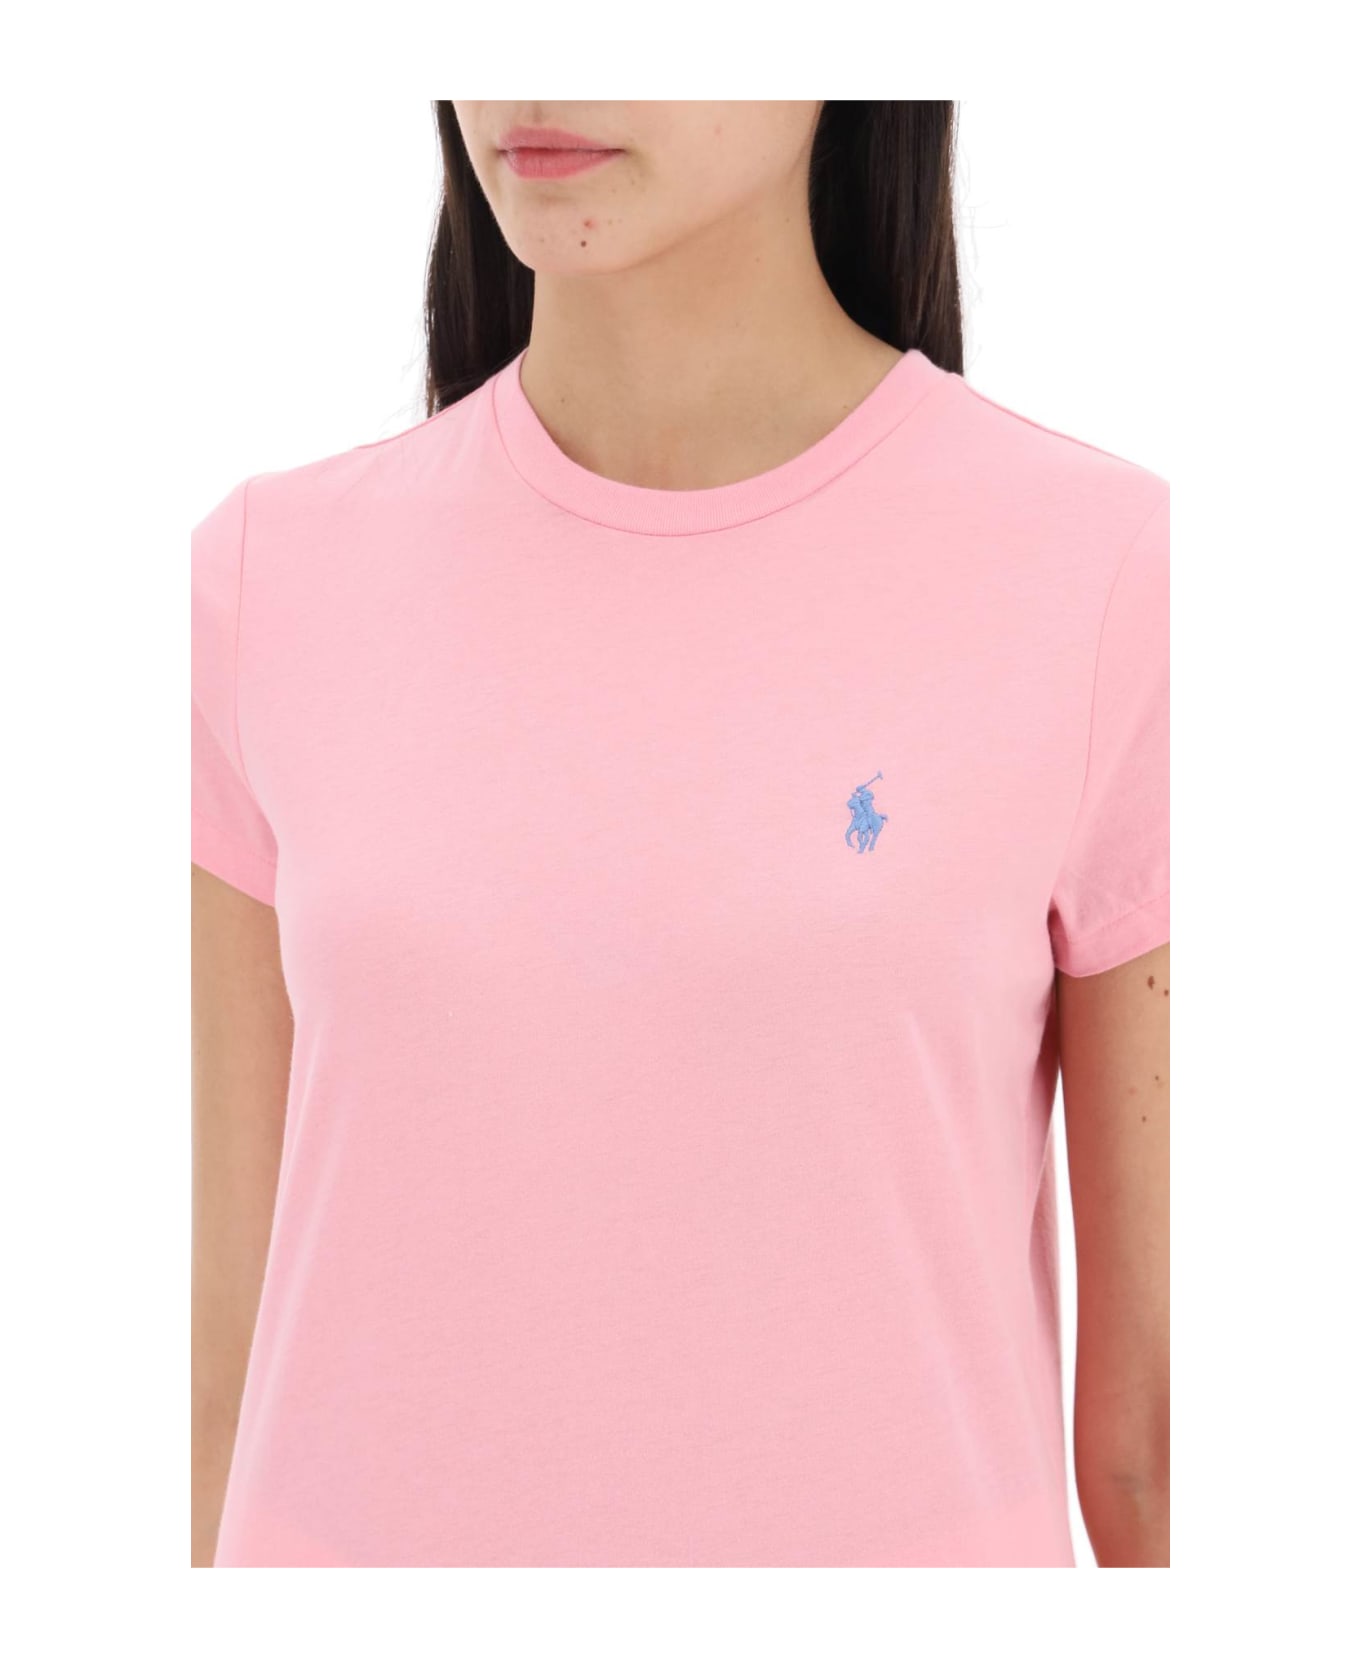 Polo Ralph Lauren Light Cotton T-shirt - COURSE PINK (Pink)